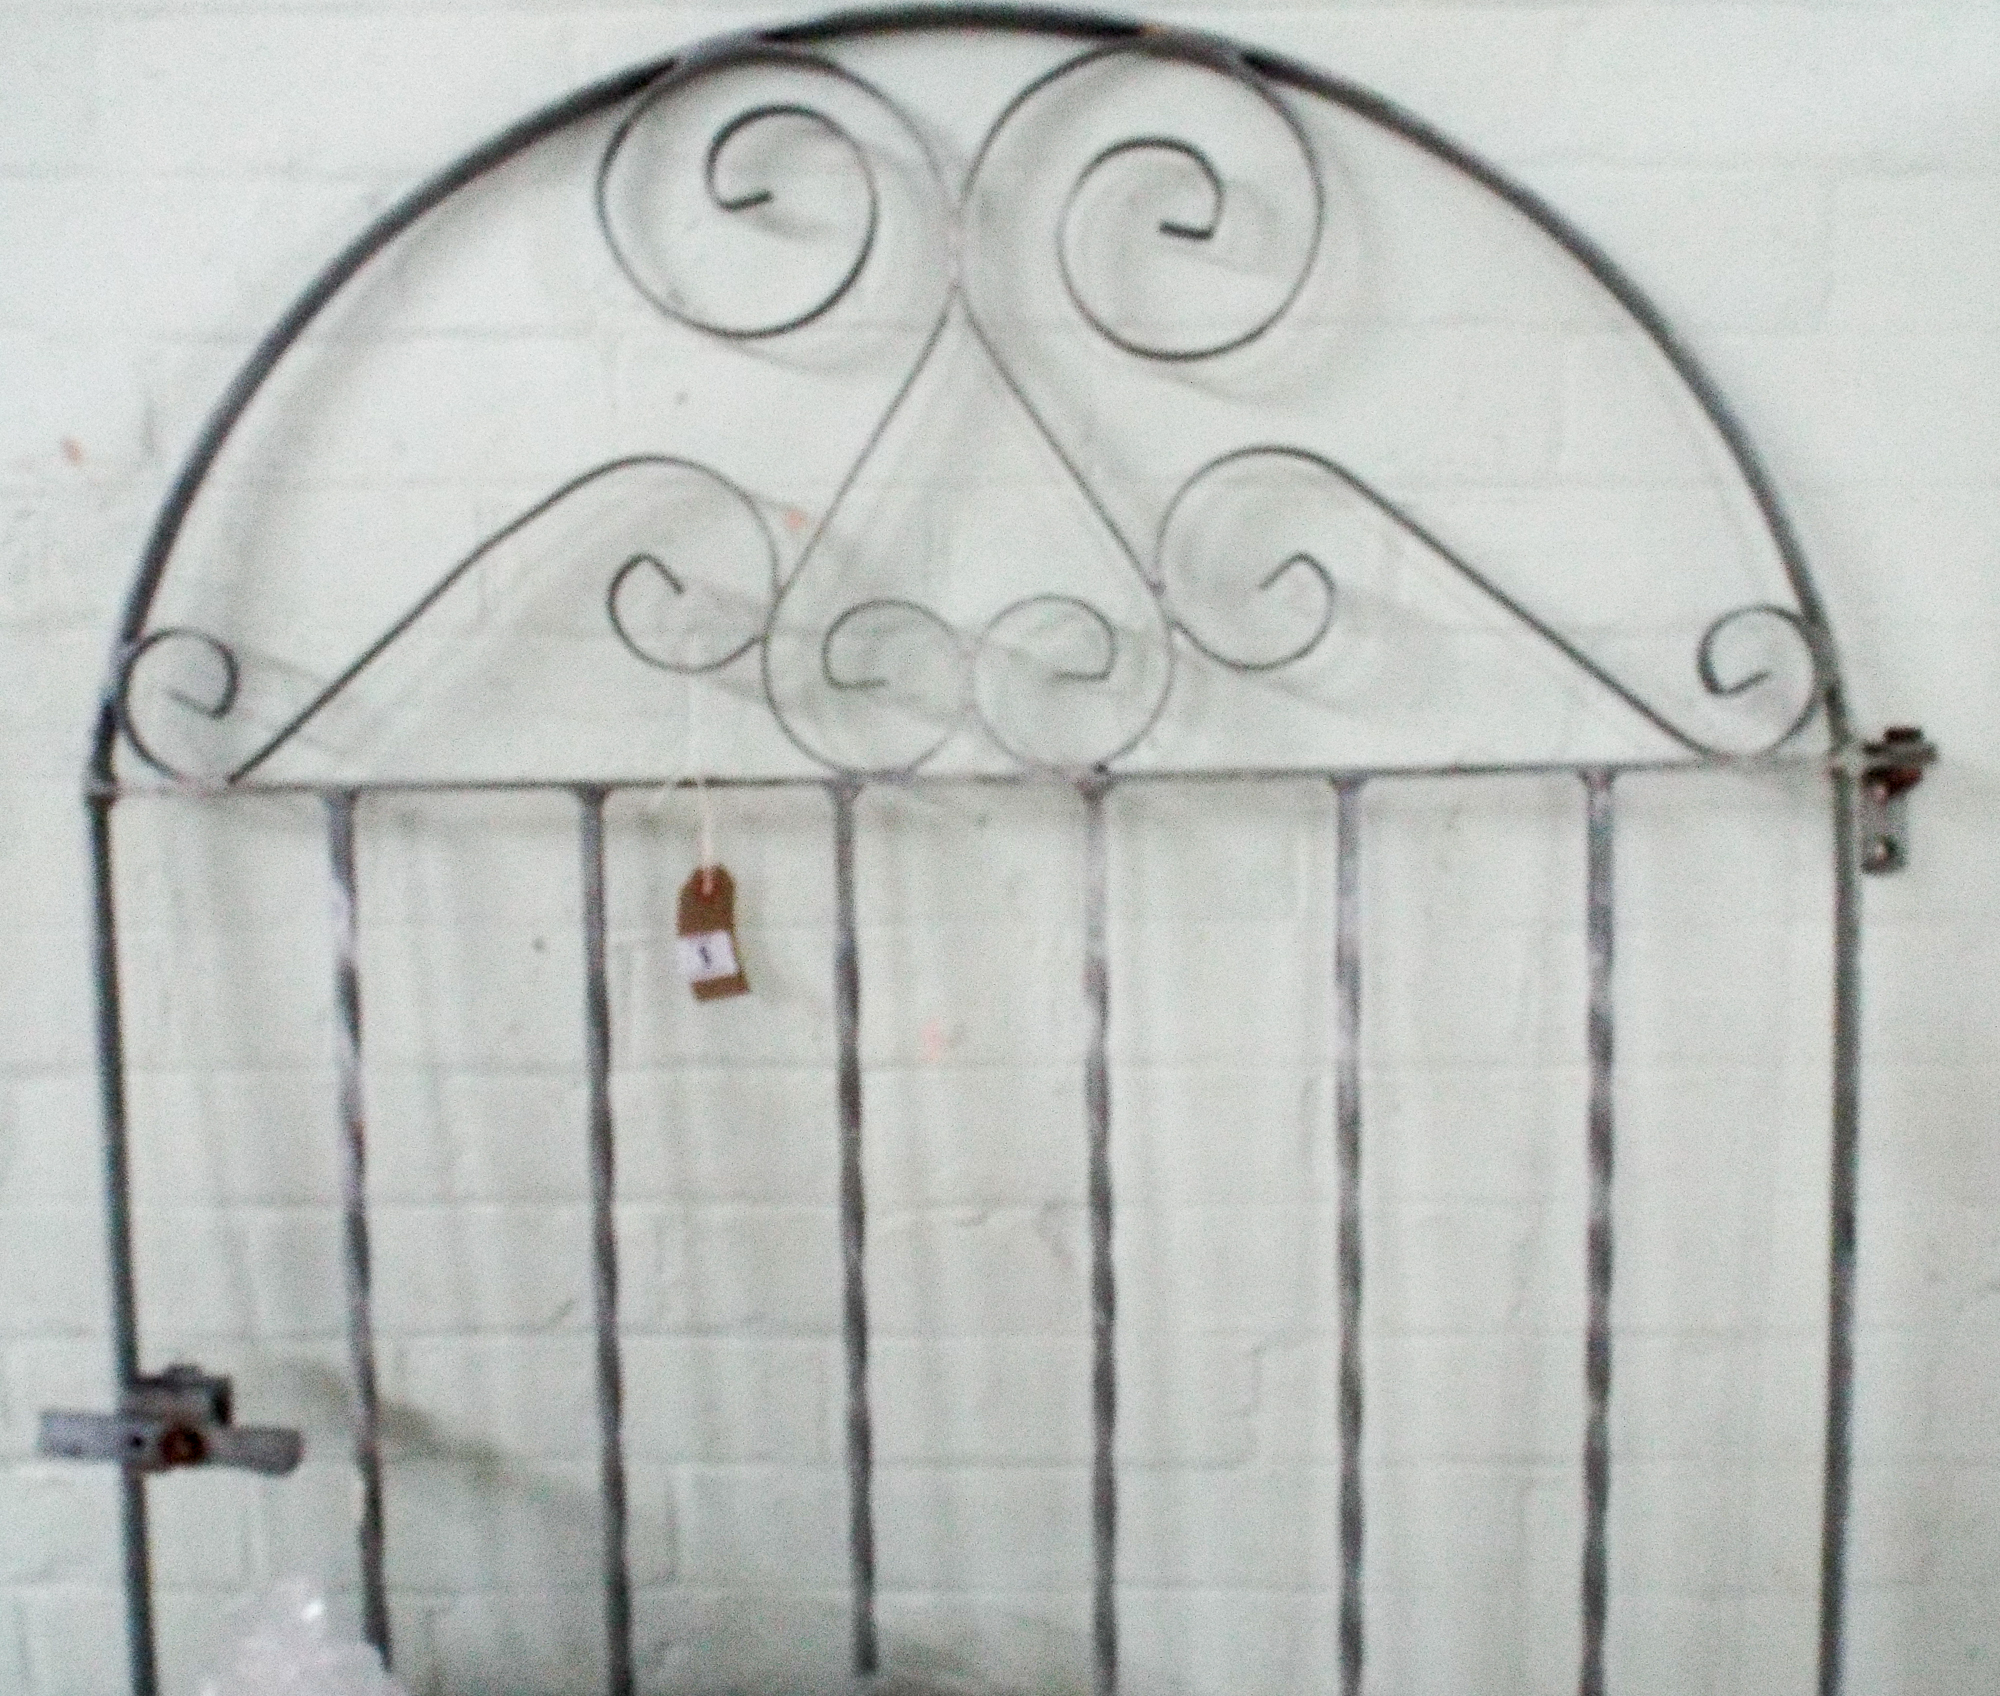 Metal garden side gate, 6' tall,